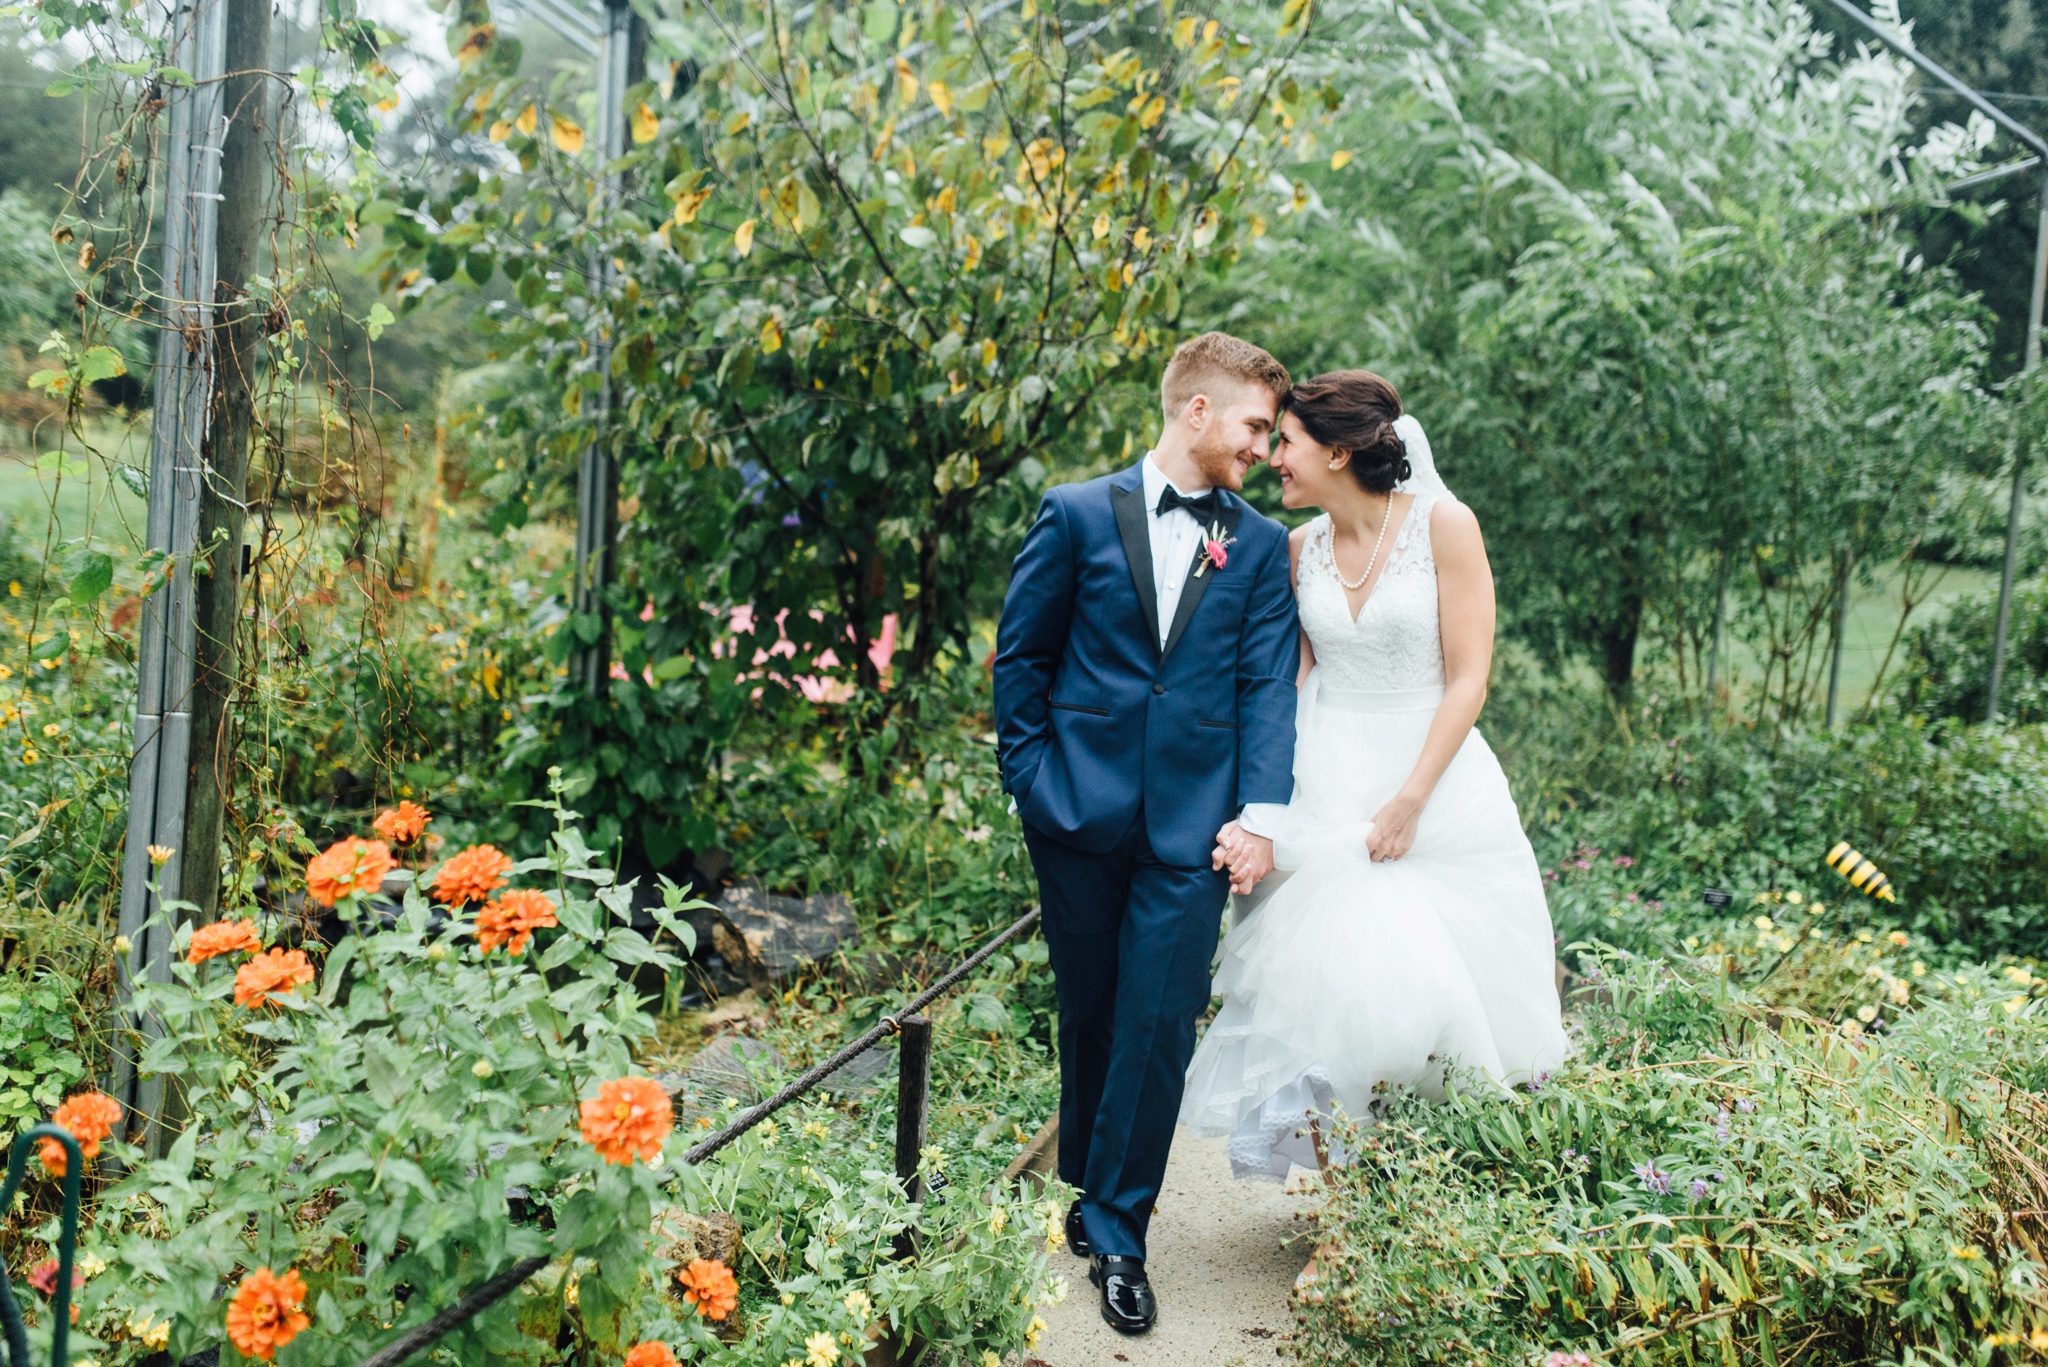 56-stephanie-gary-tyler-arboretum-wedding-media-pennsylvania-alison-dunn-photography-photo